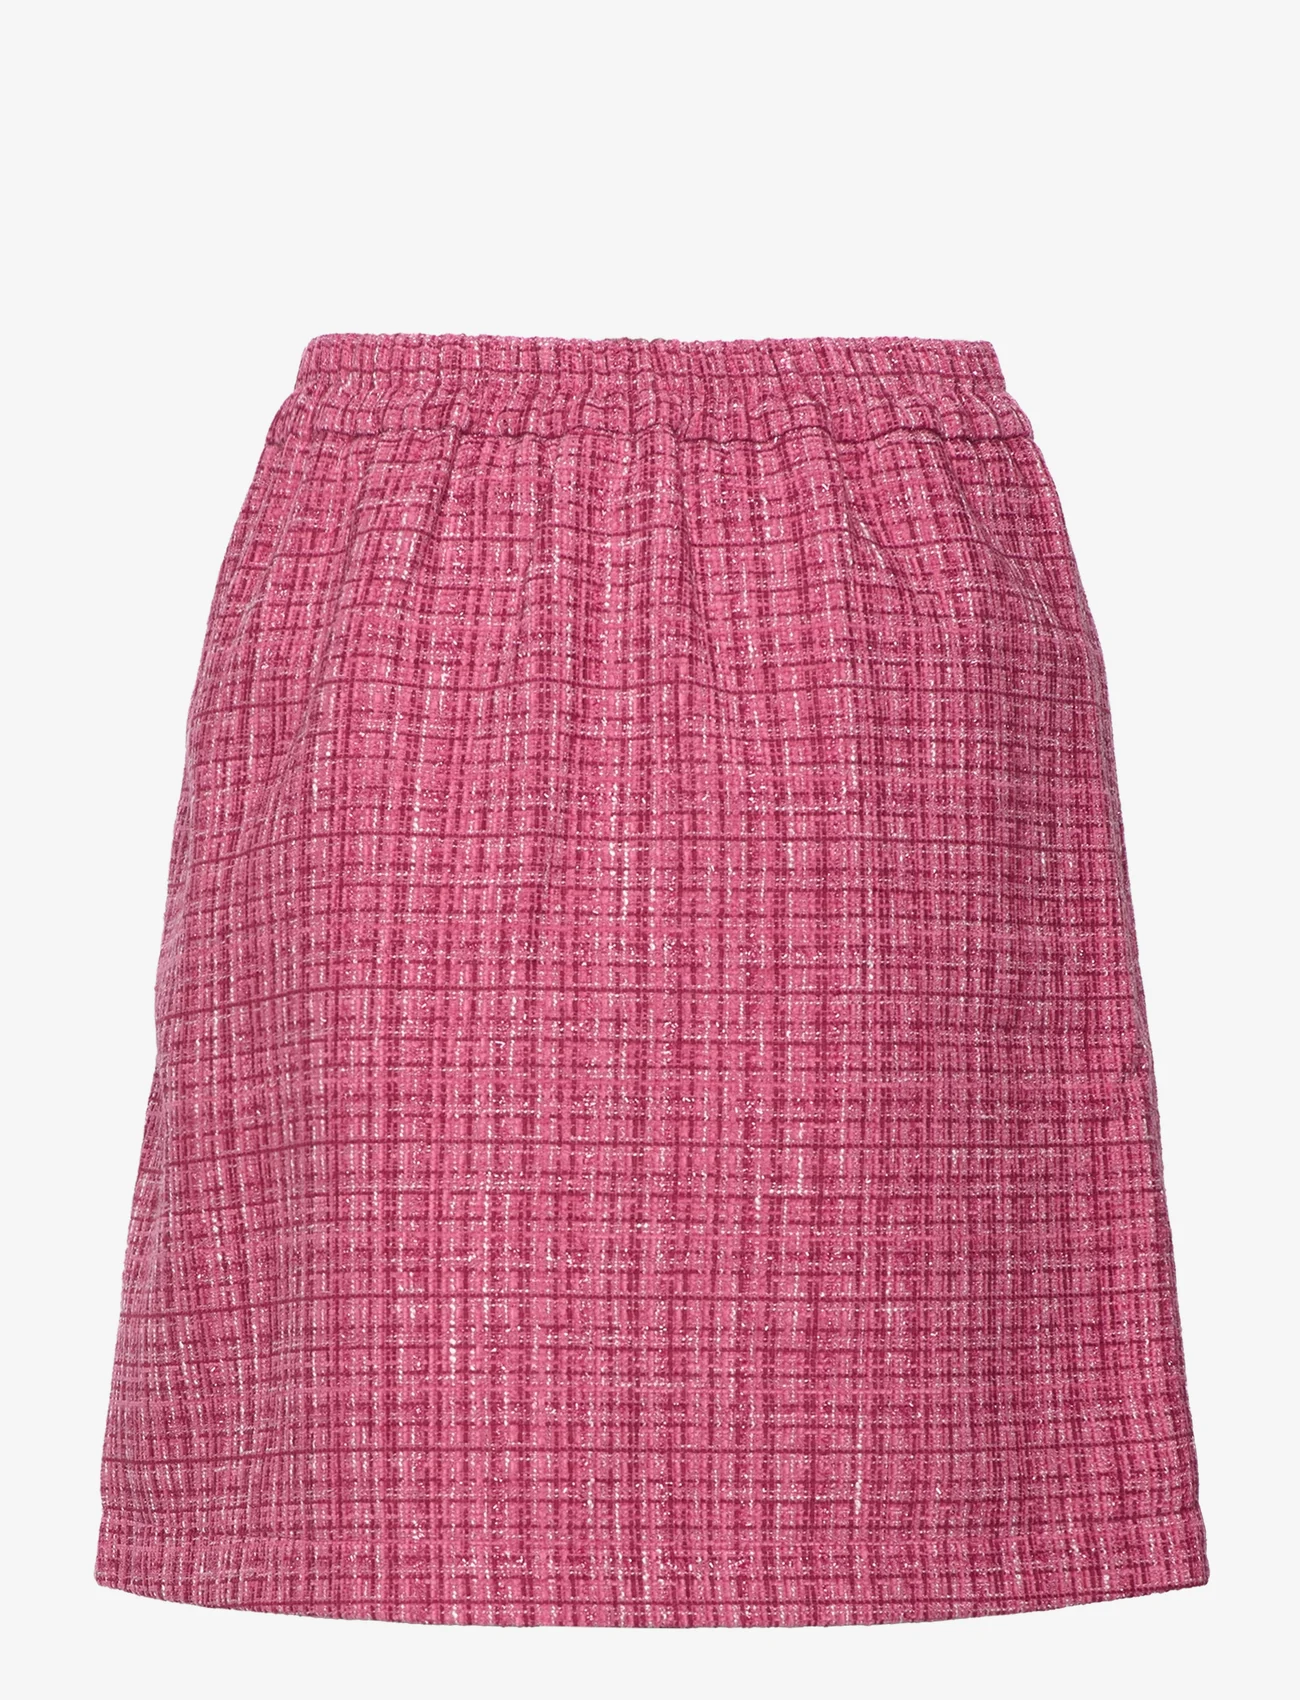 Rosemunde - Skirt - korte nederdele - pink peacock mix - 1